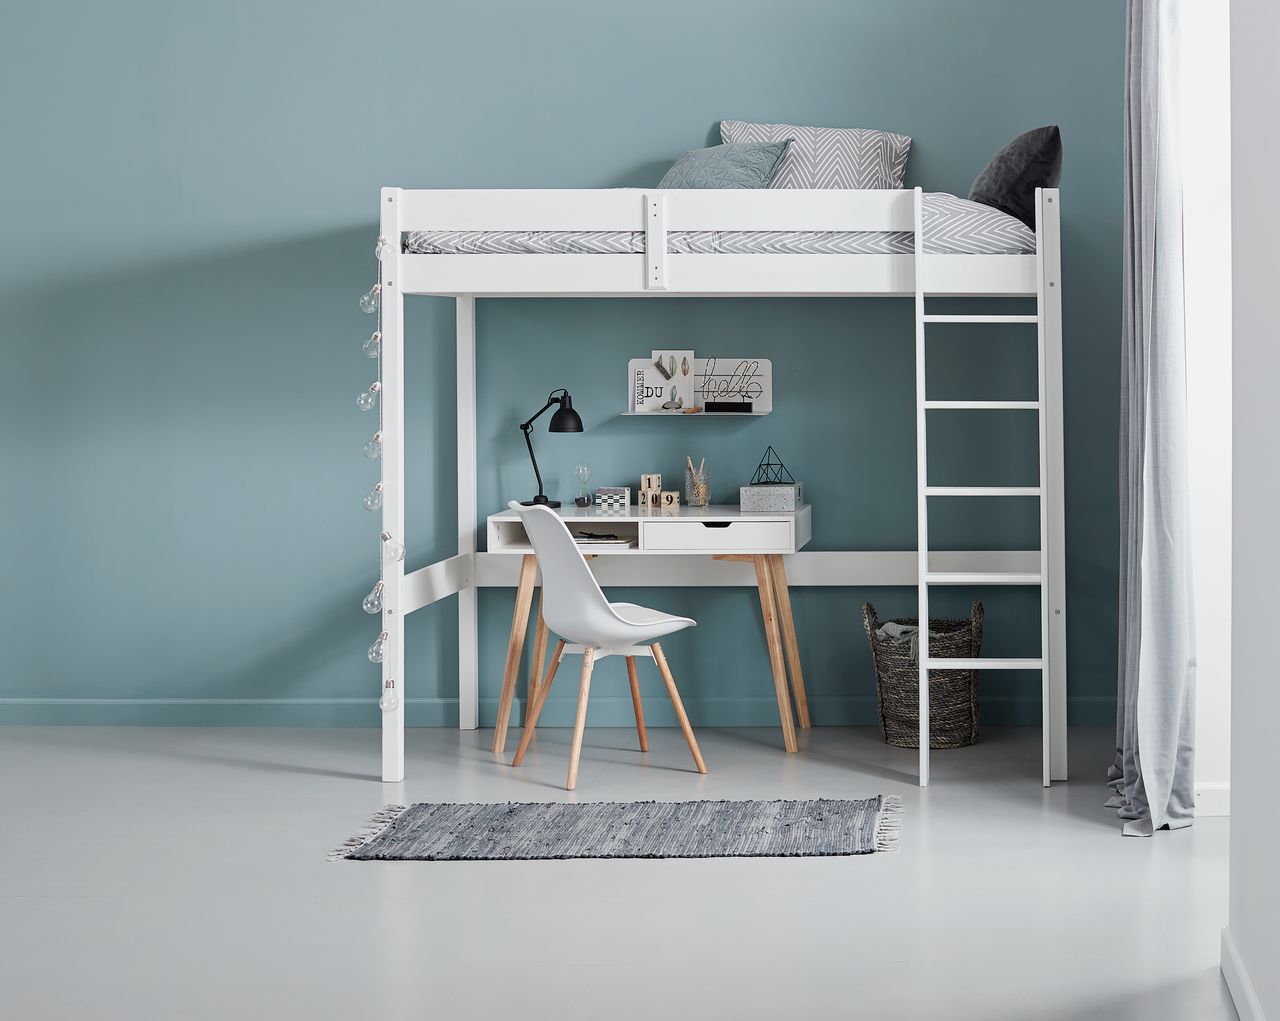 Mẫu thiết kế phòng ngủ đơn giản 6m2 sử dụng giường ngủ thông minh kết hợp bàn làm việc